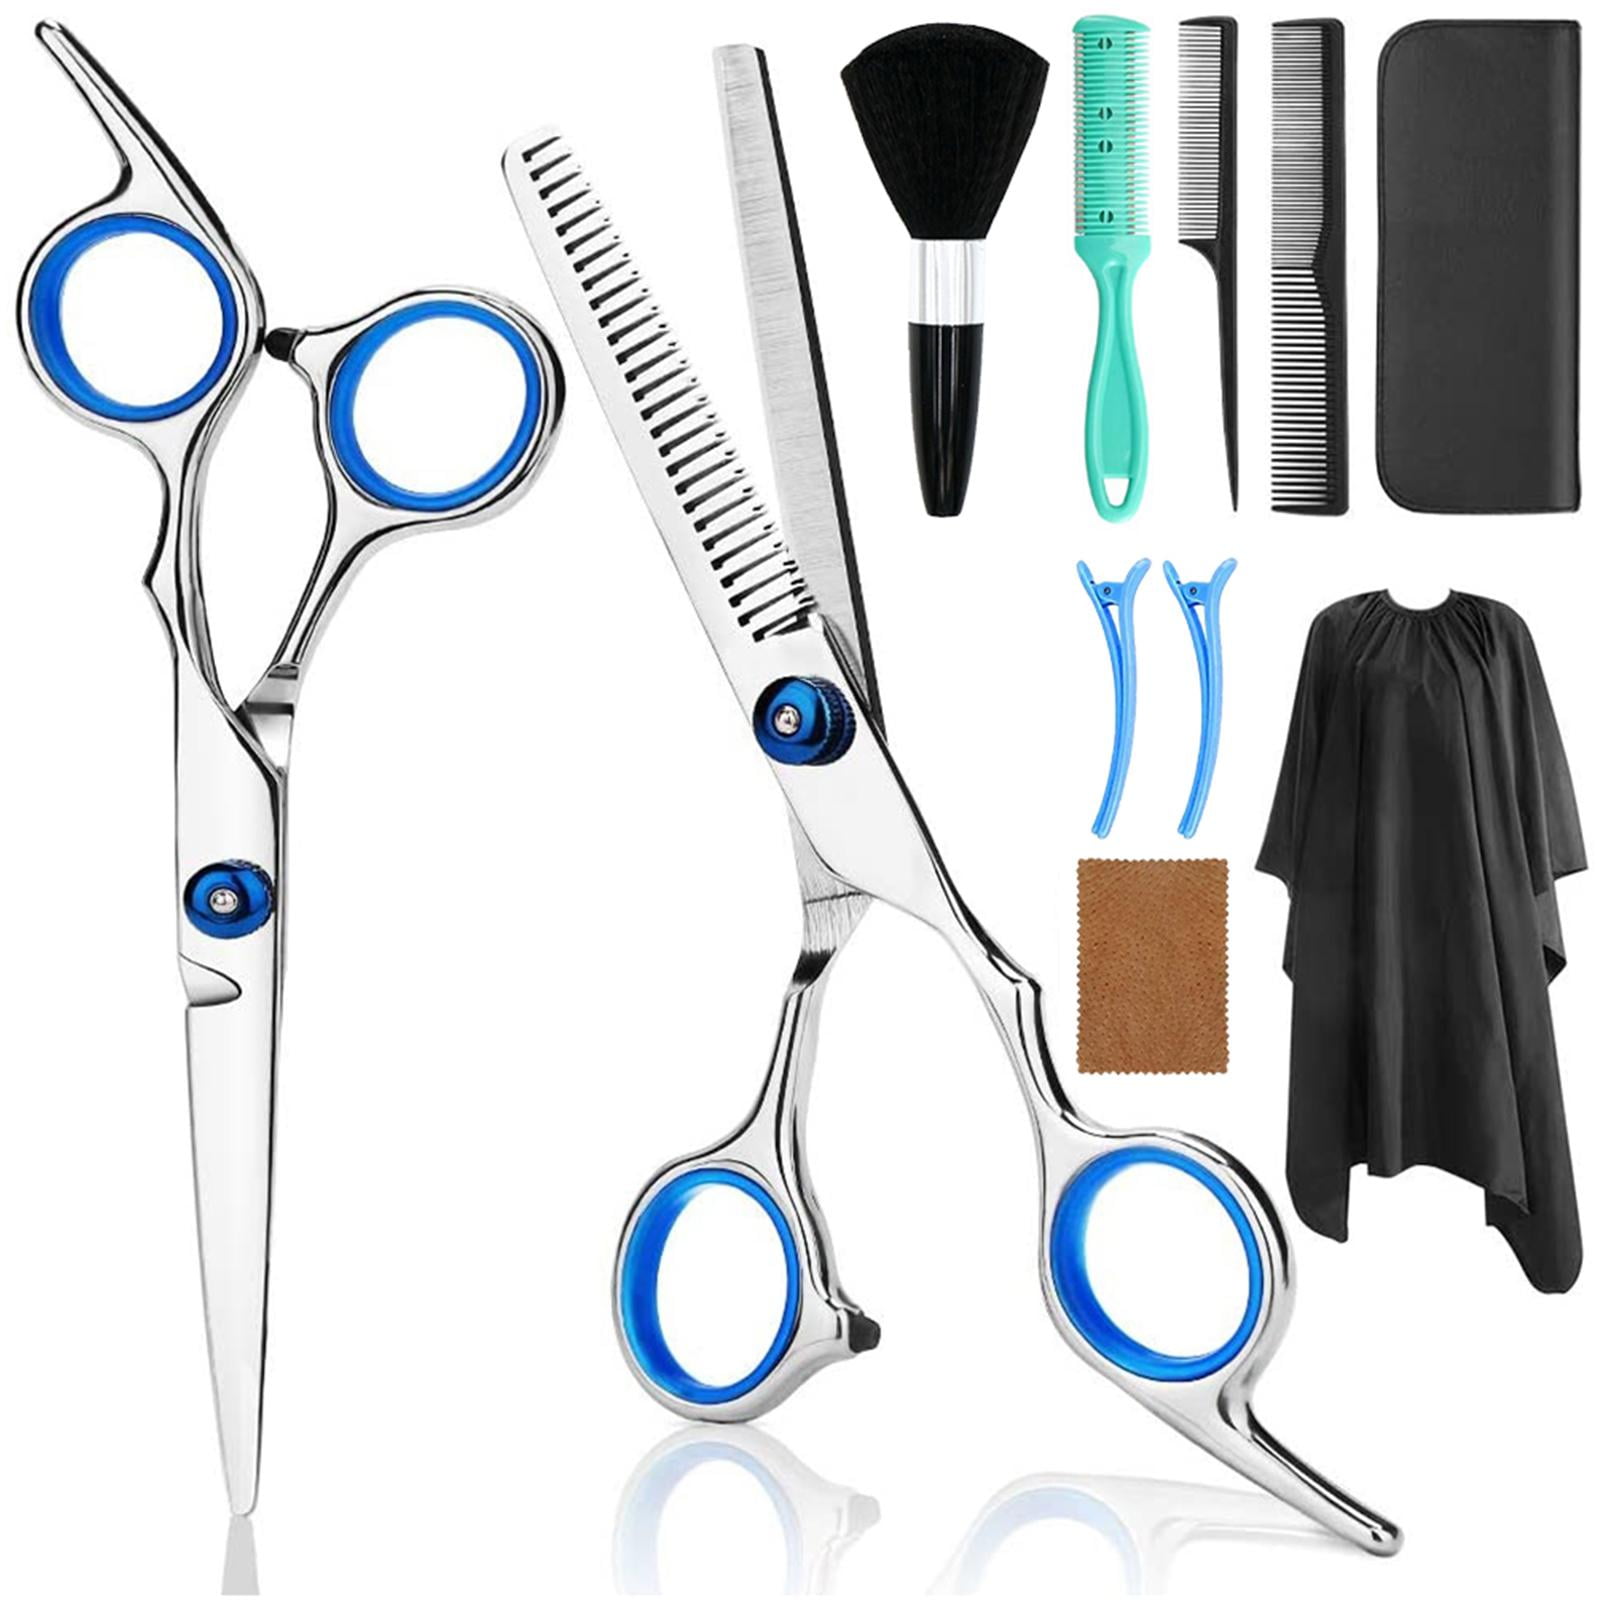 haircut accessories kit